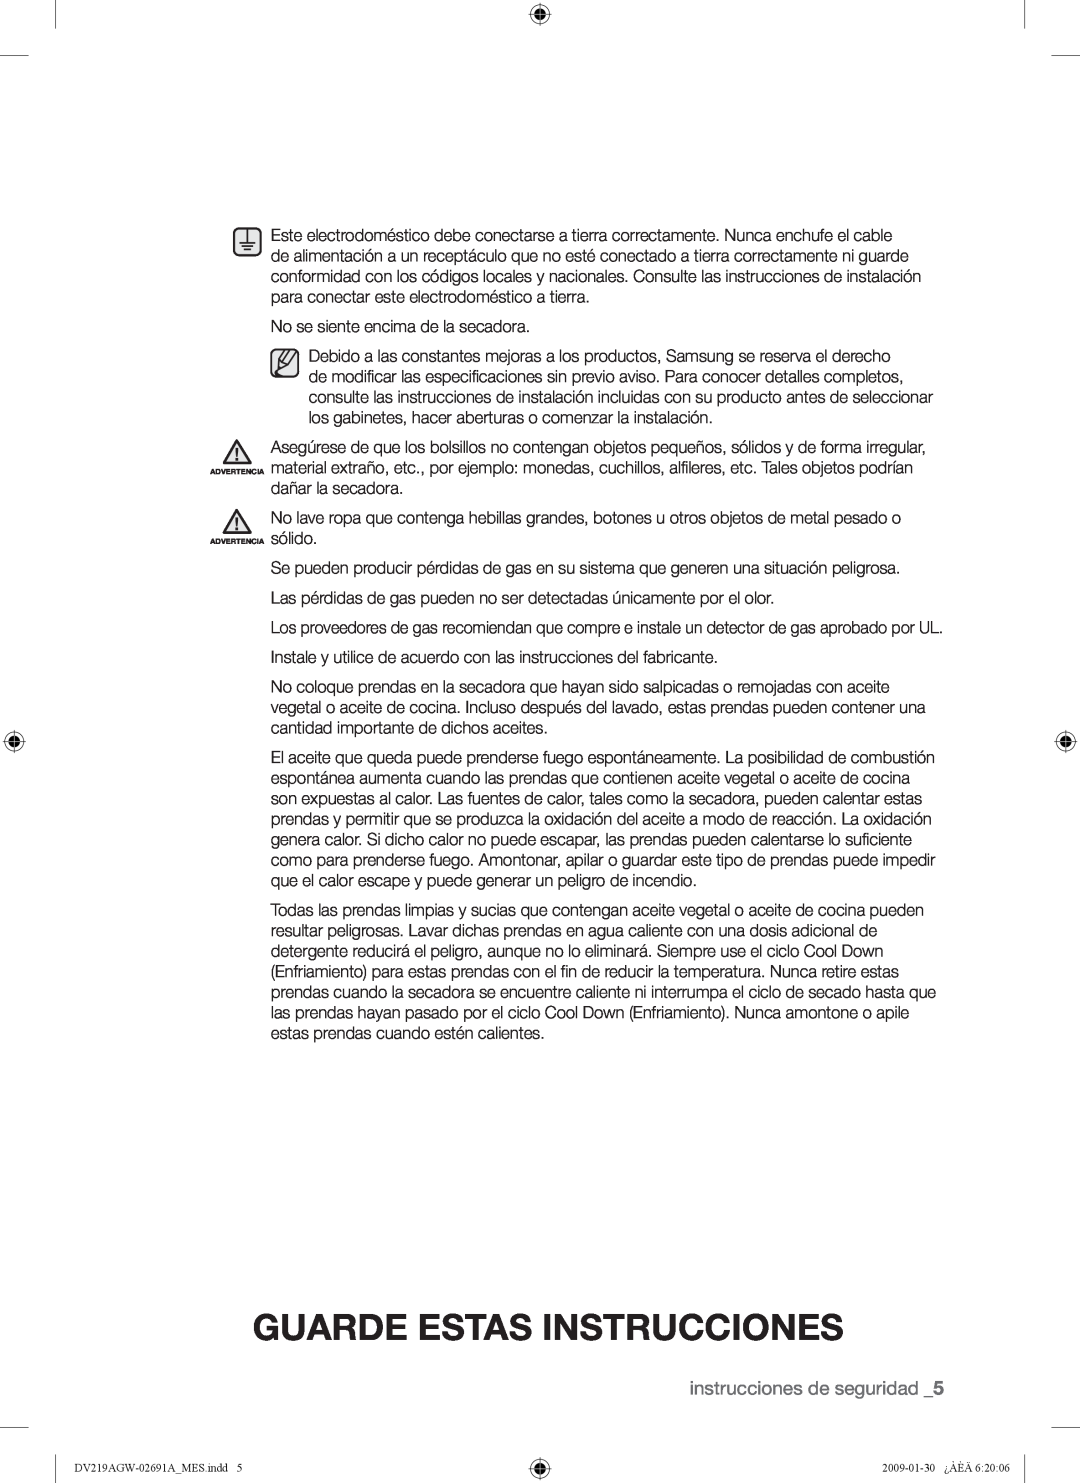 Samsung DV219AE*, DV219AGW Guarde Estas Instrucciones, instrucciones de seguridad, No se siente encima de la secadora 